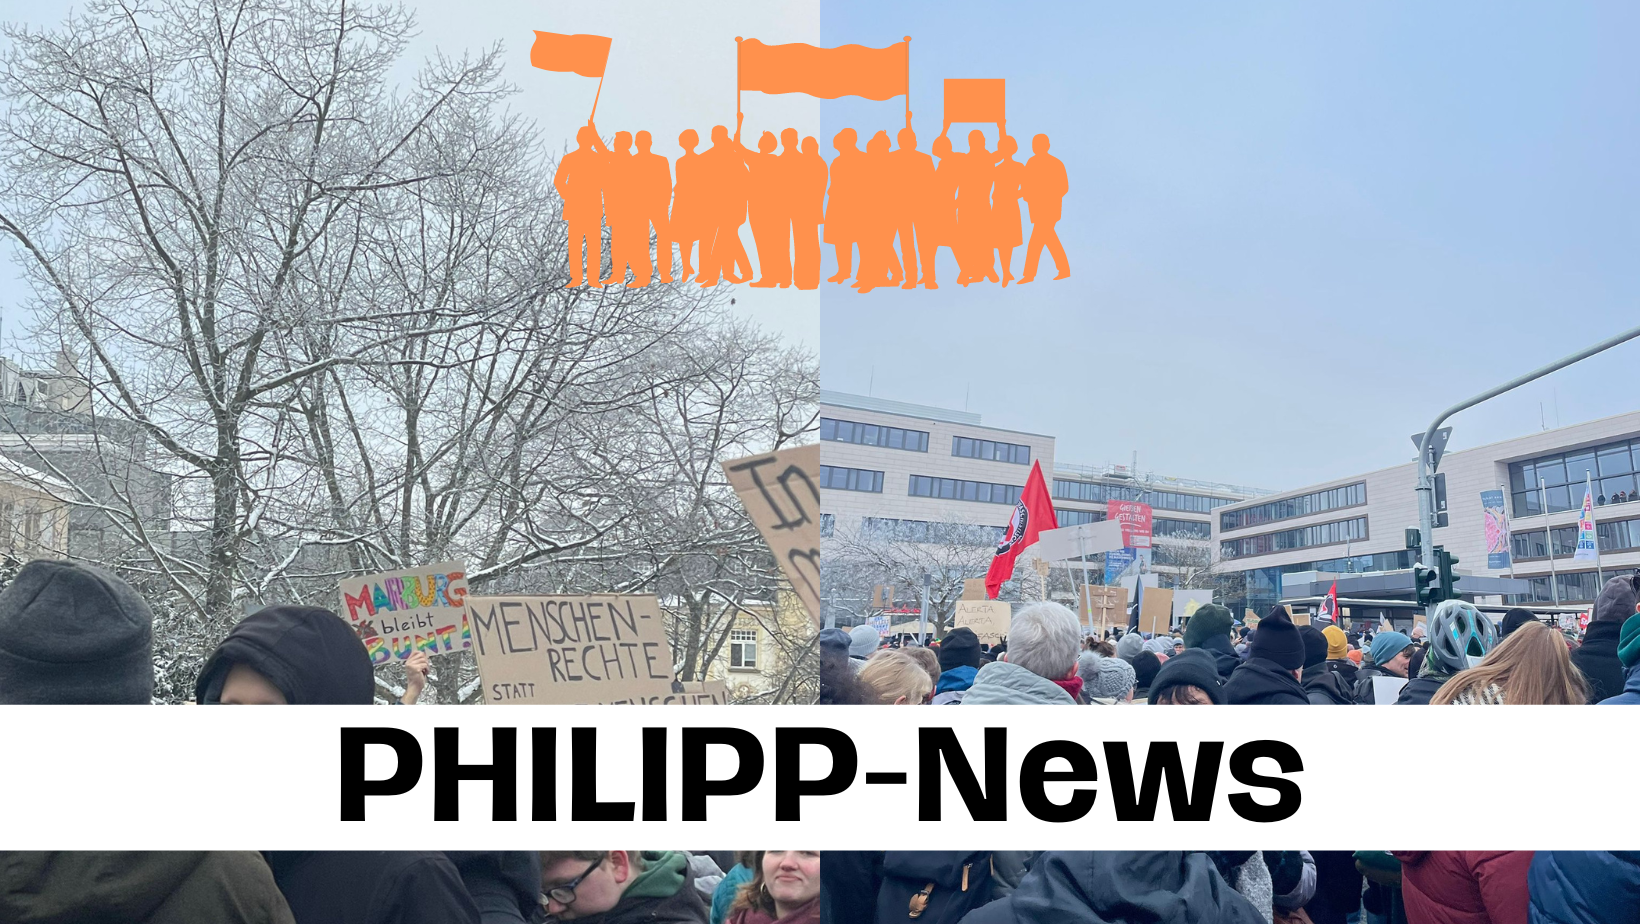 PHILIPP-News: Demo gegen Rechtsextremismus in Gießen: Wir wehren uns – Nie wieder!